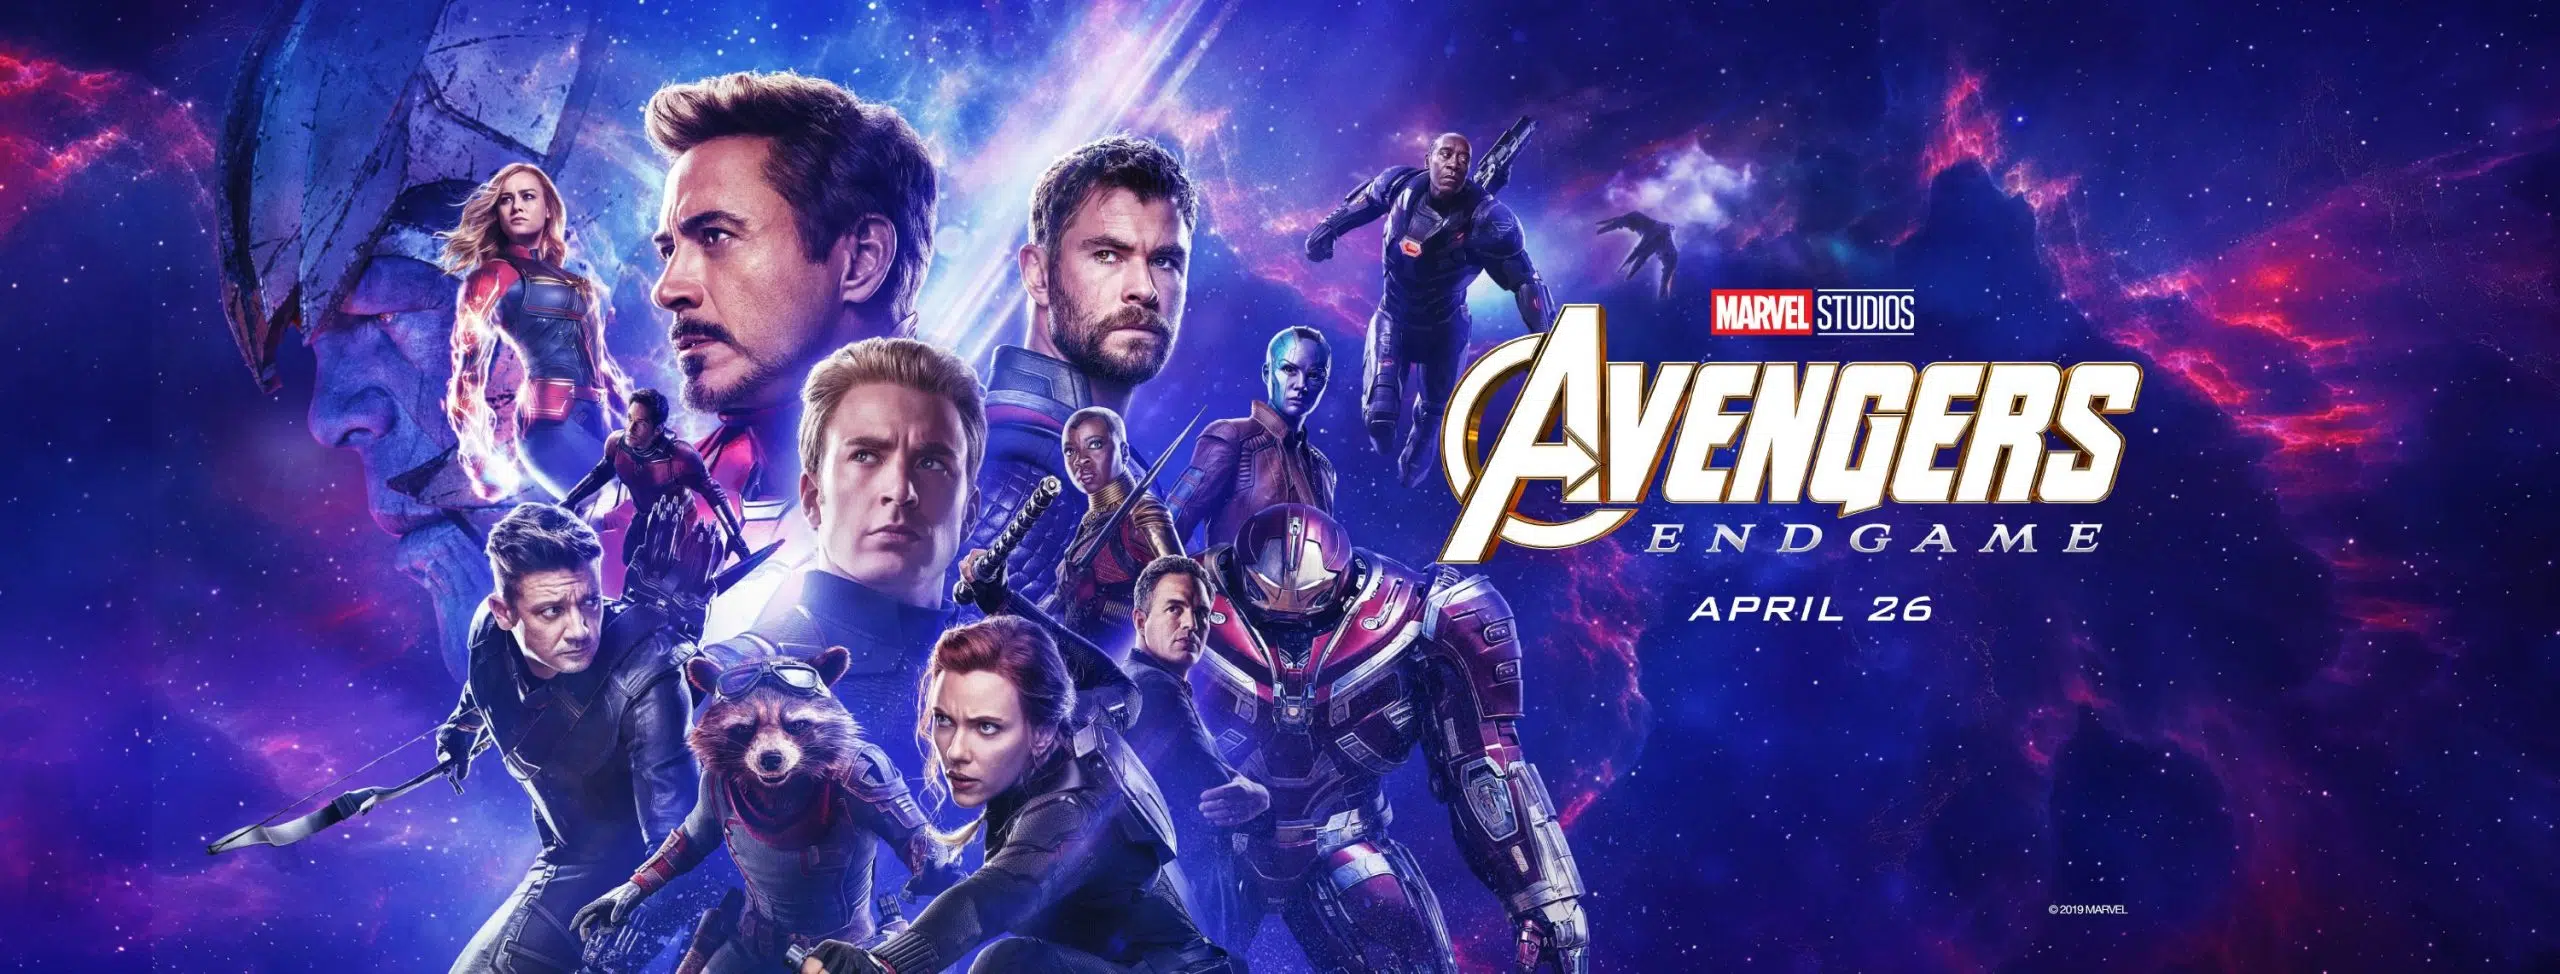 Marvel Studios' Avengers: Endgame - "Mission" Spot